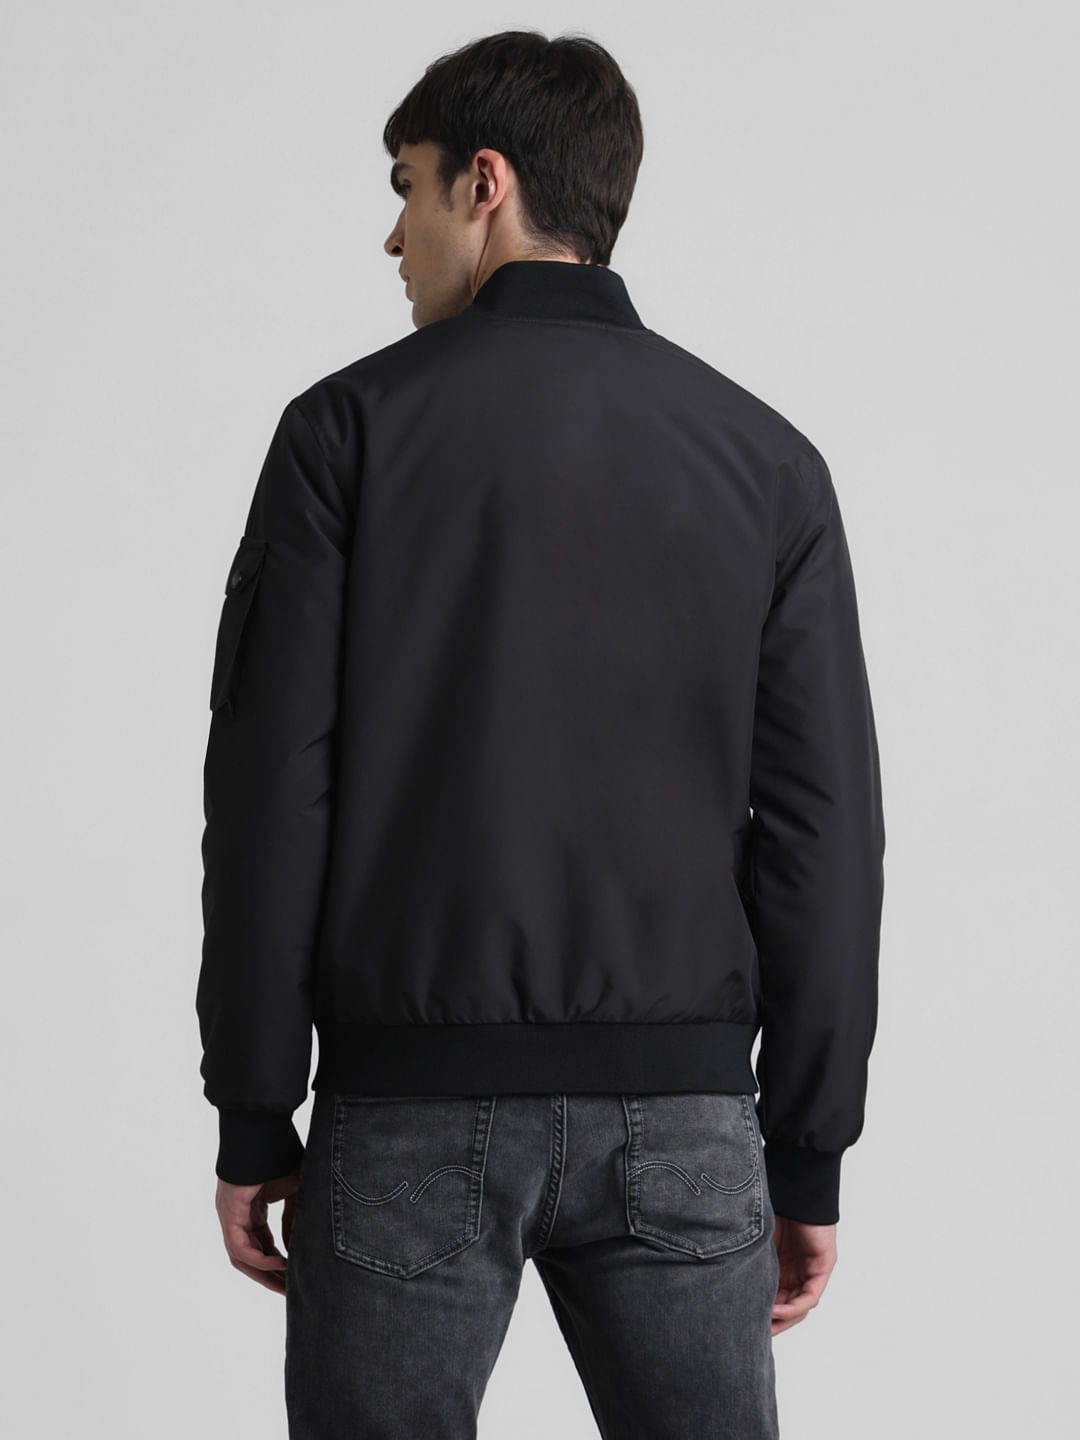 San Fran Hooded Bomber Jacket - Black | Fashion Nova, Jackets & Coats |  Fashion Nova